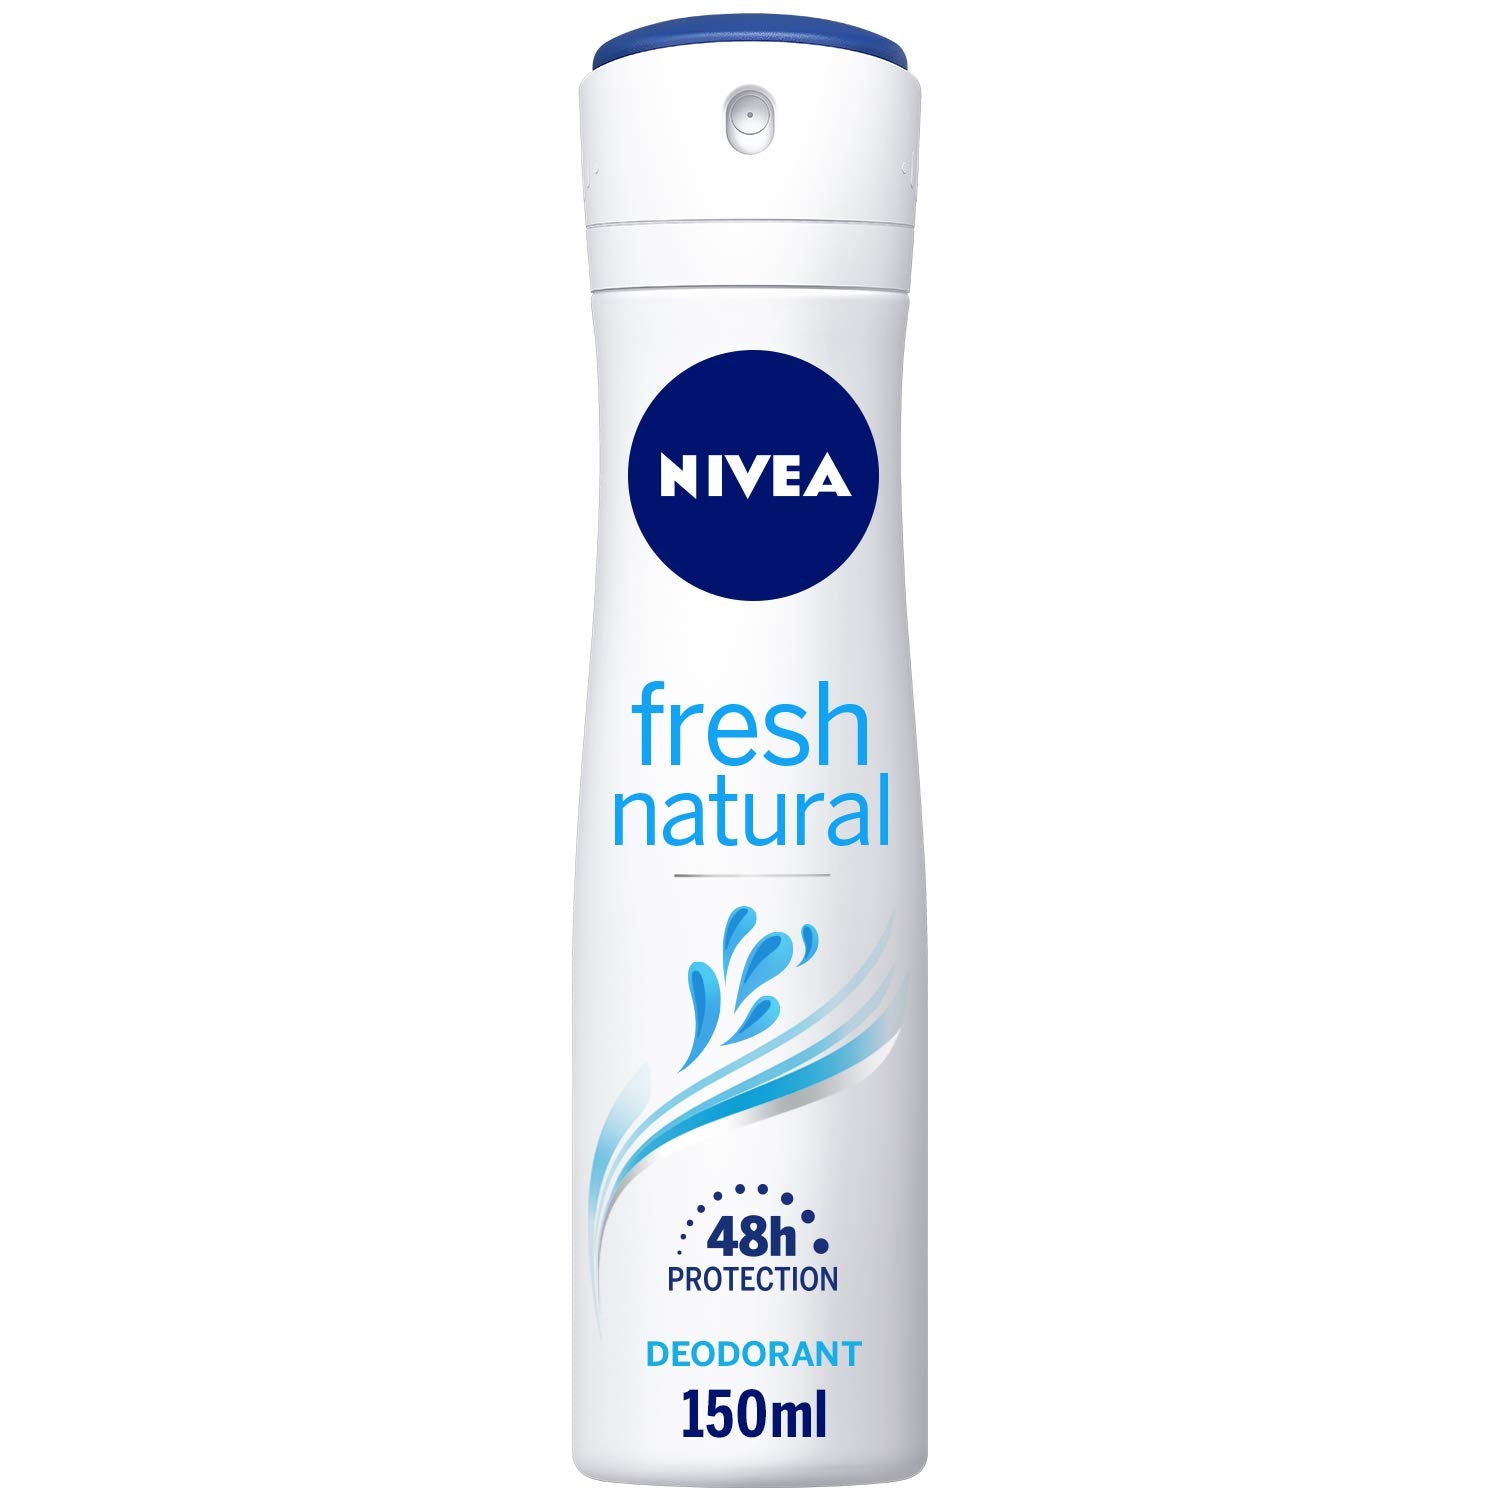 NIVEA Spray Fresh Natural -150ml